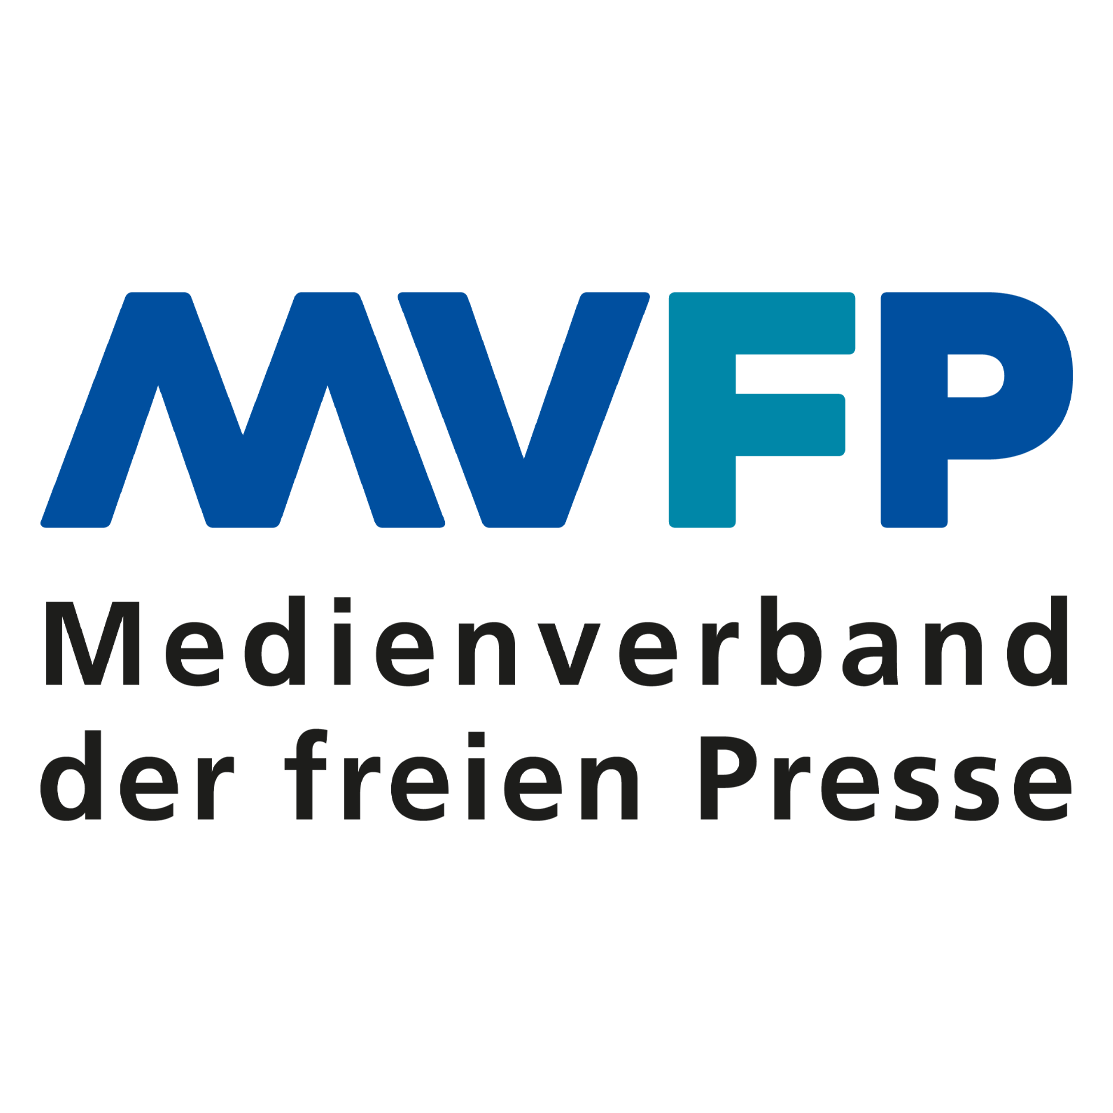 MVFP – Medienverband der freien Presse